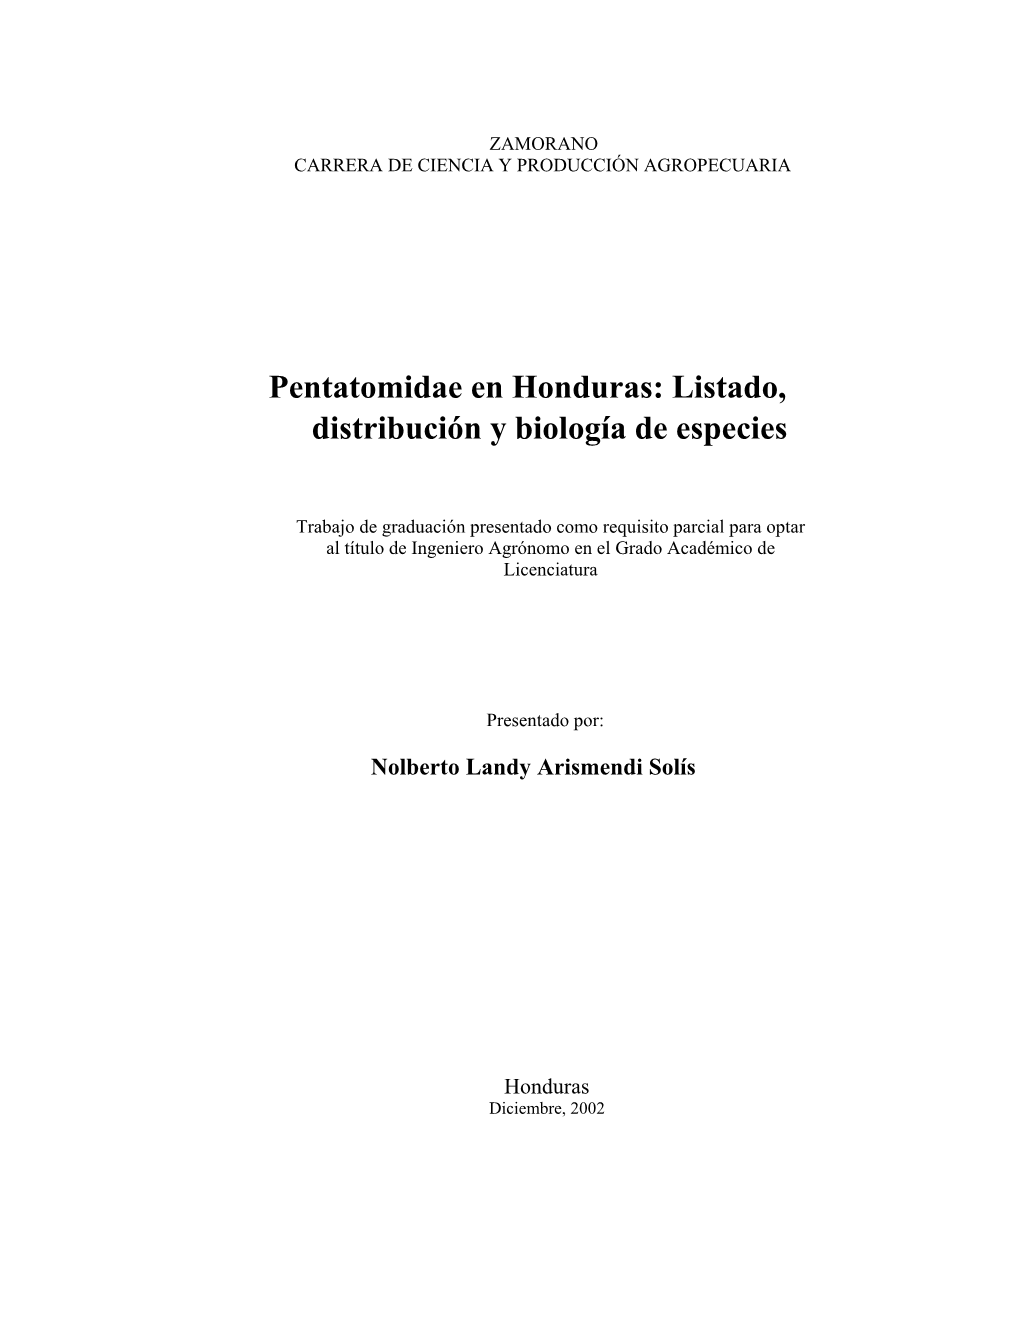 Pentatomidae En Honduras: Listado, Distribucion Y Biologia De Especies